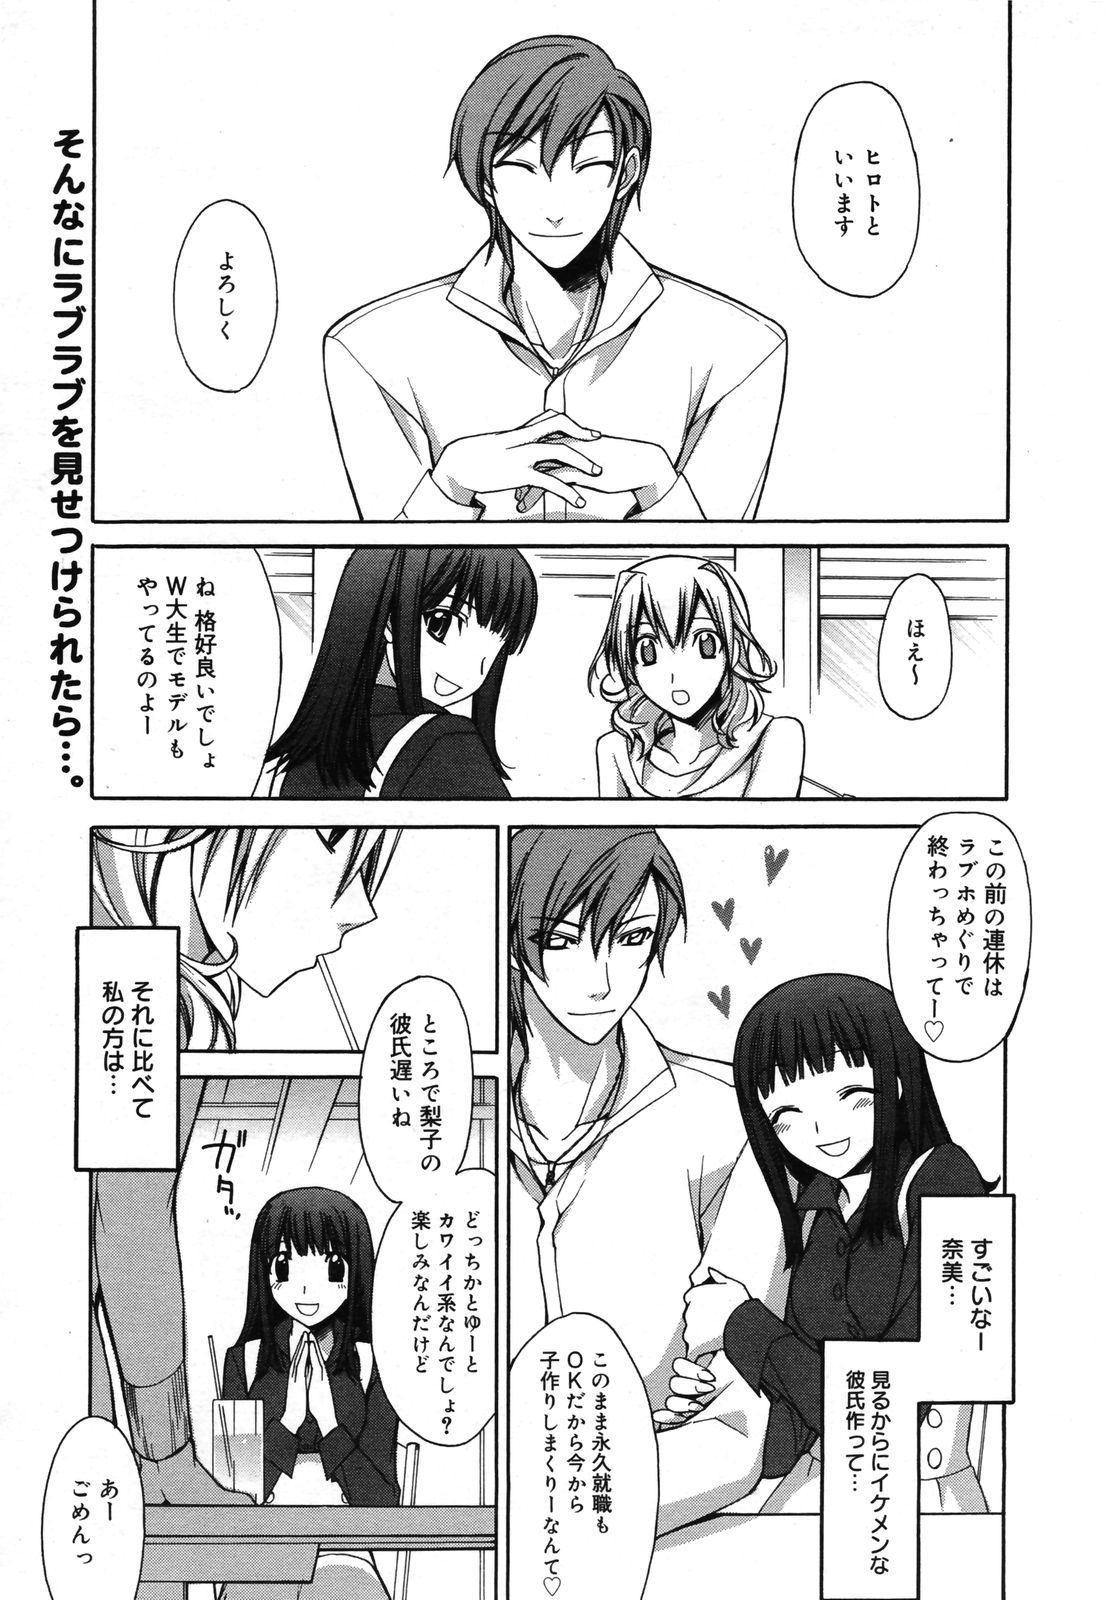 Manga Bangaichi 2007-05 page 18 full